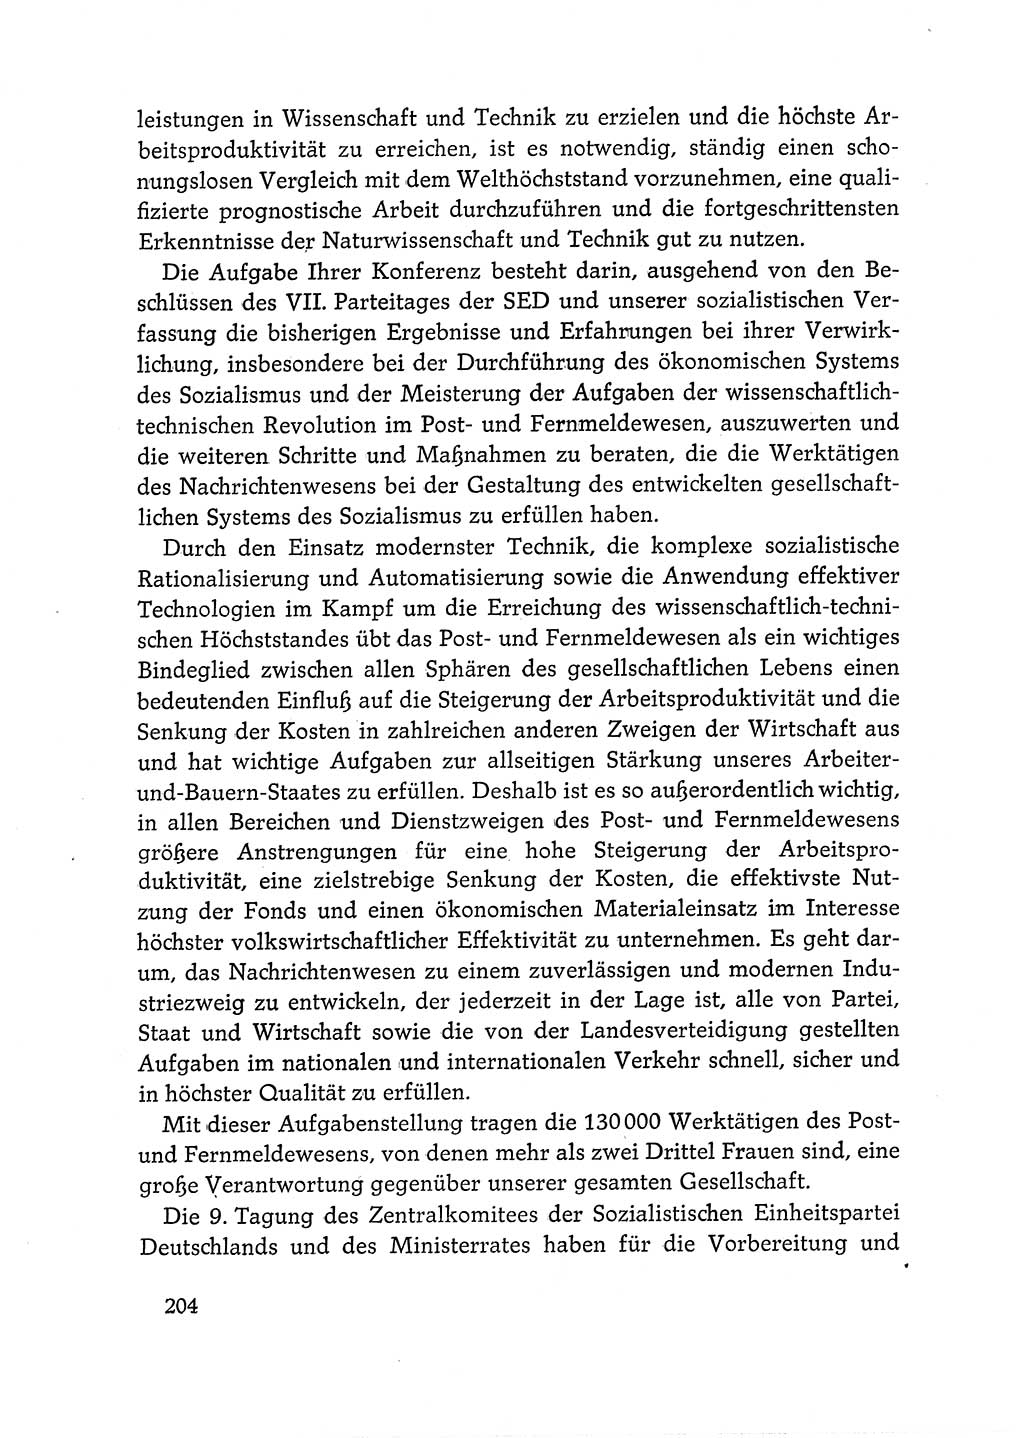 Dokumente der Sozialistischen Einheitspartei Deutschlands (SED) [Deutsche Demokratische Republik (DDR)] 1968-1969, Seite 204 (Dok. SED DDR 1968-1969, S. 204)